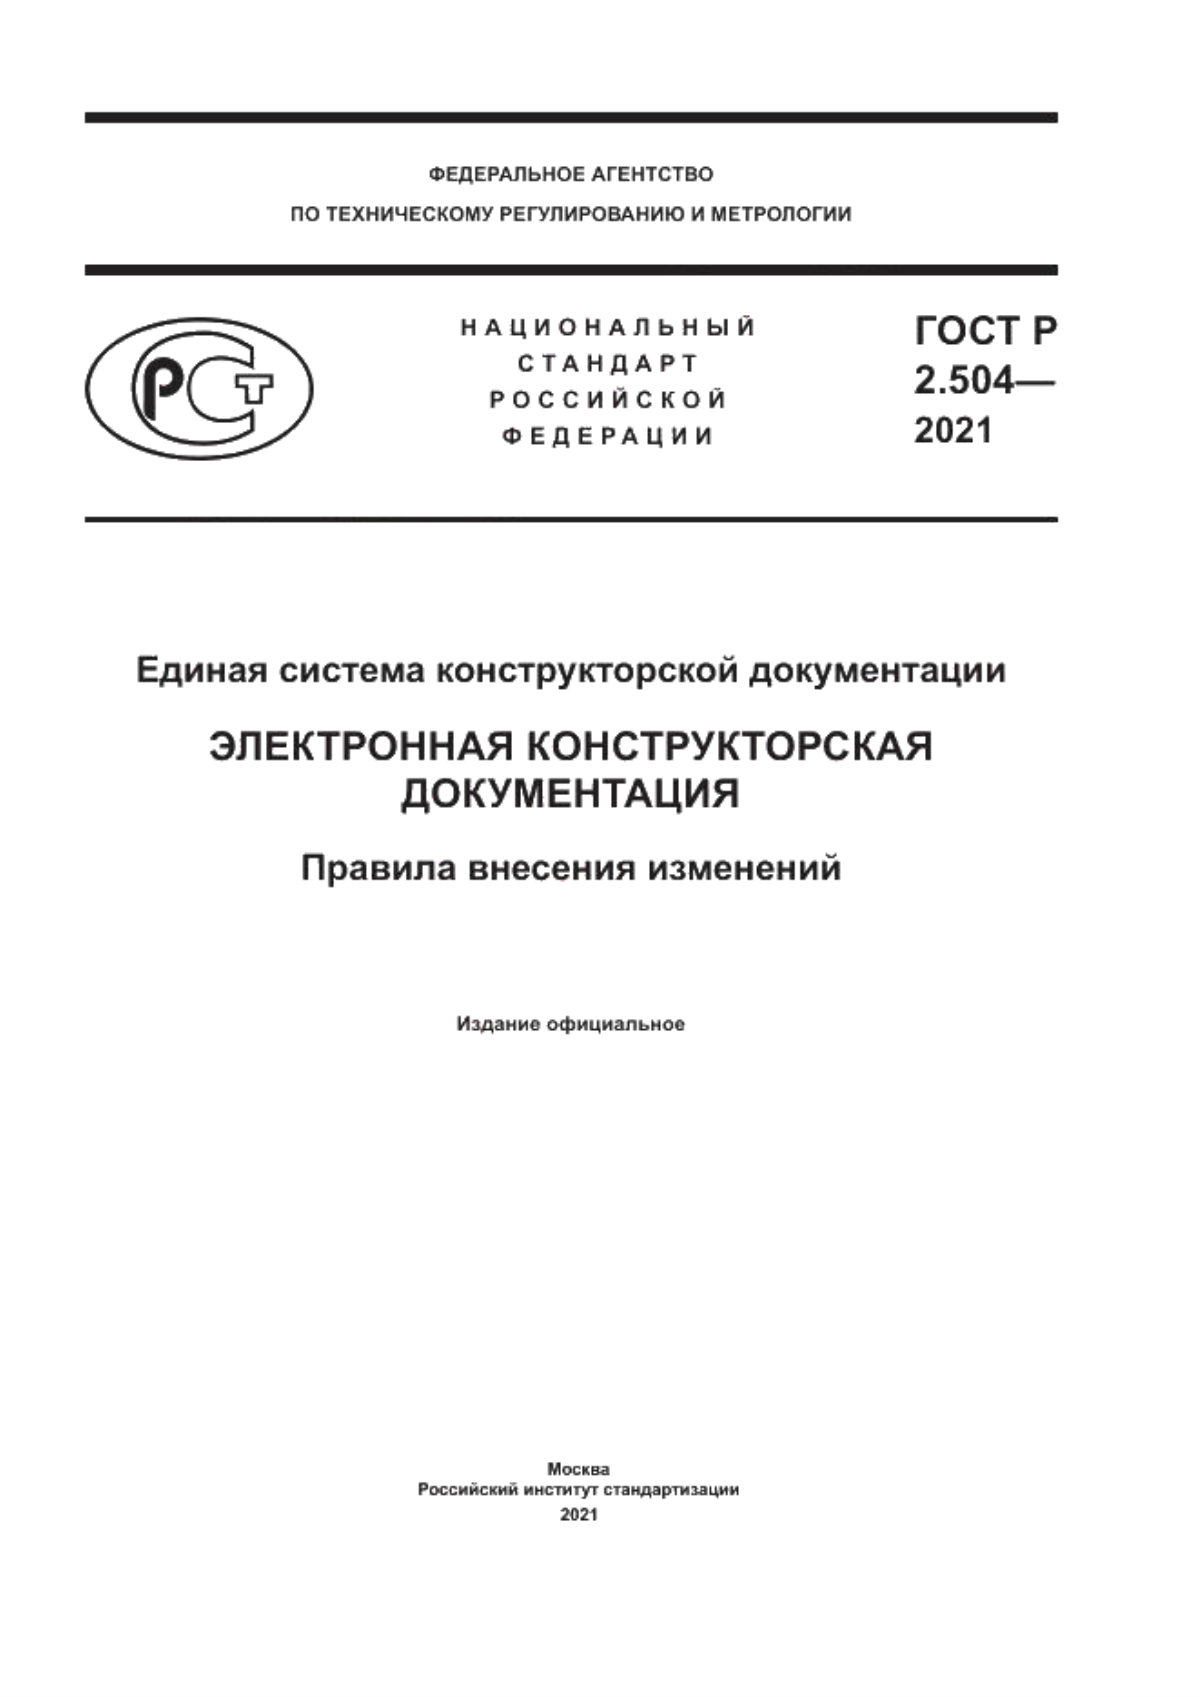 ГОСТ Р 2.504-2021 Единая система конструкторской документации. Электронная конструкторская документация. Правила внесения изменений